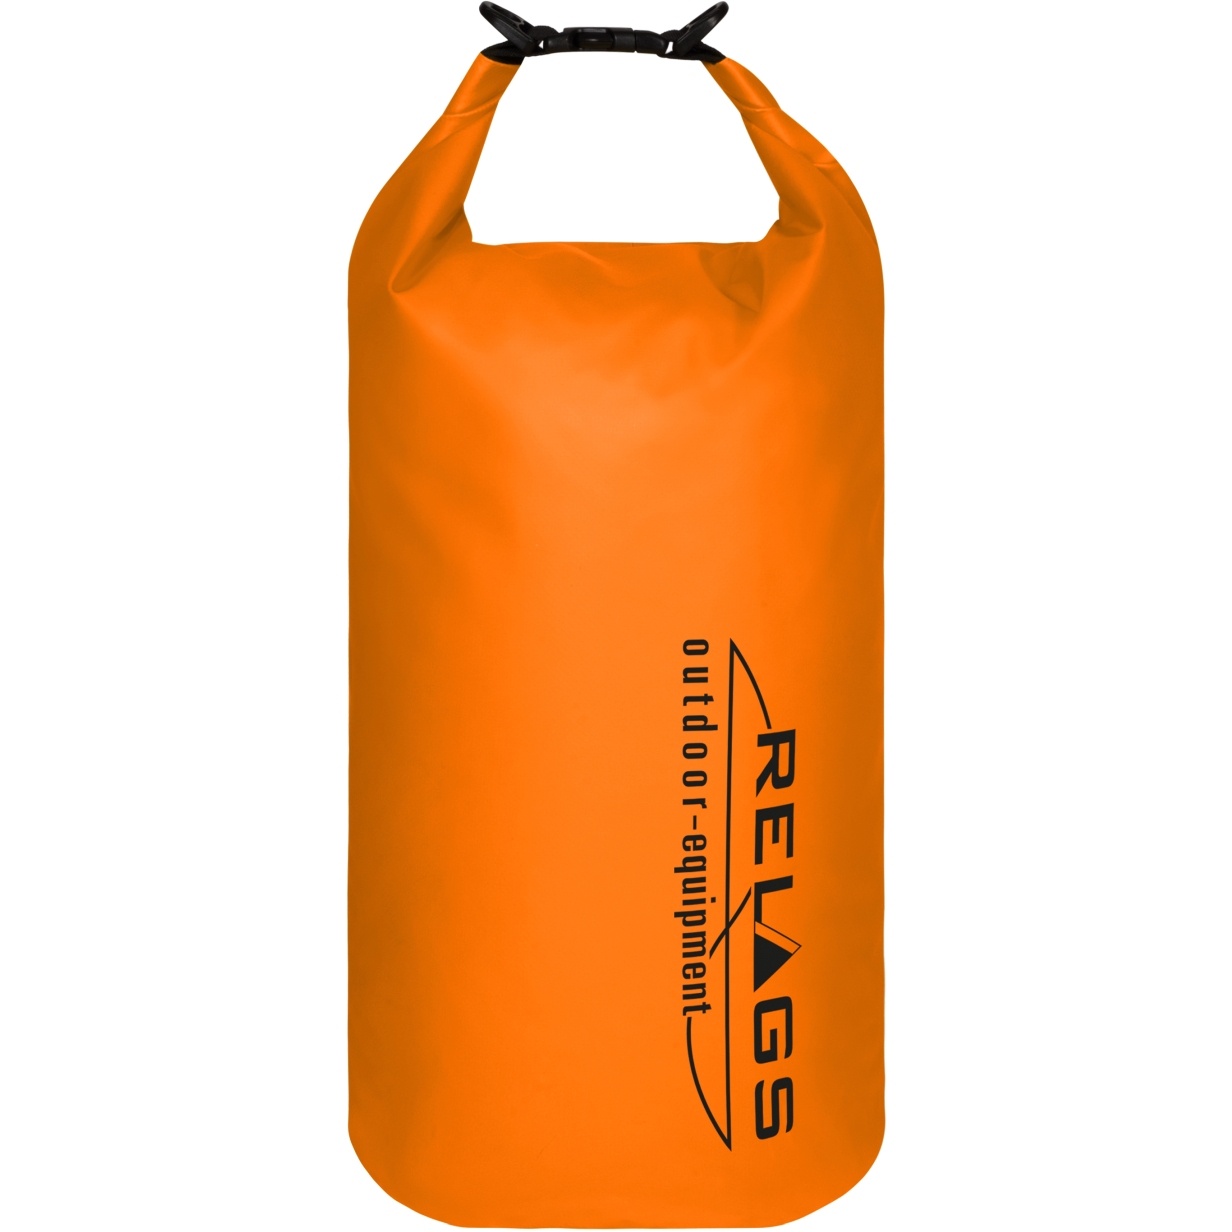 Productfoto van basic NATURE | Relags Dry Bag 500D - 20L - oranje